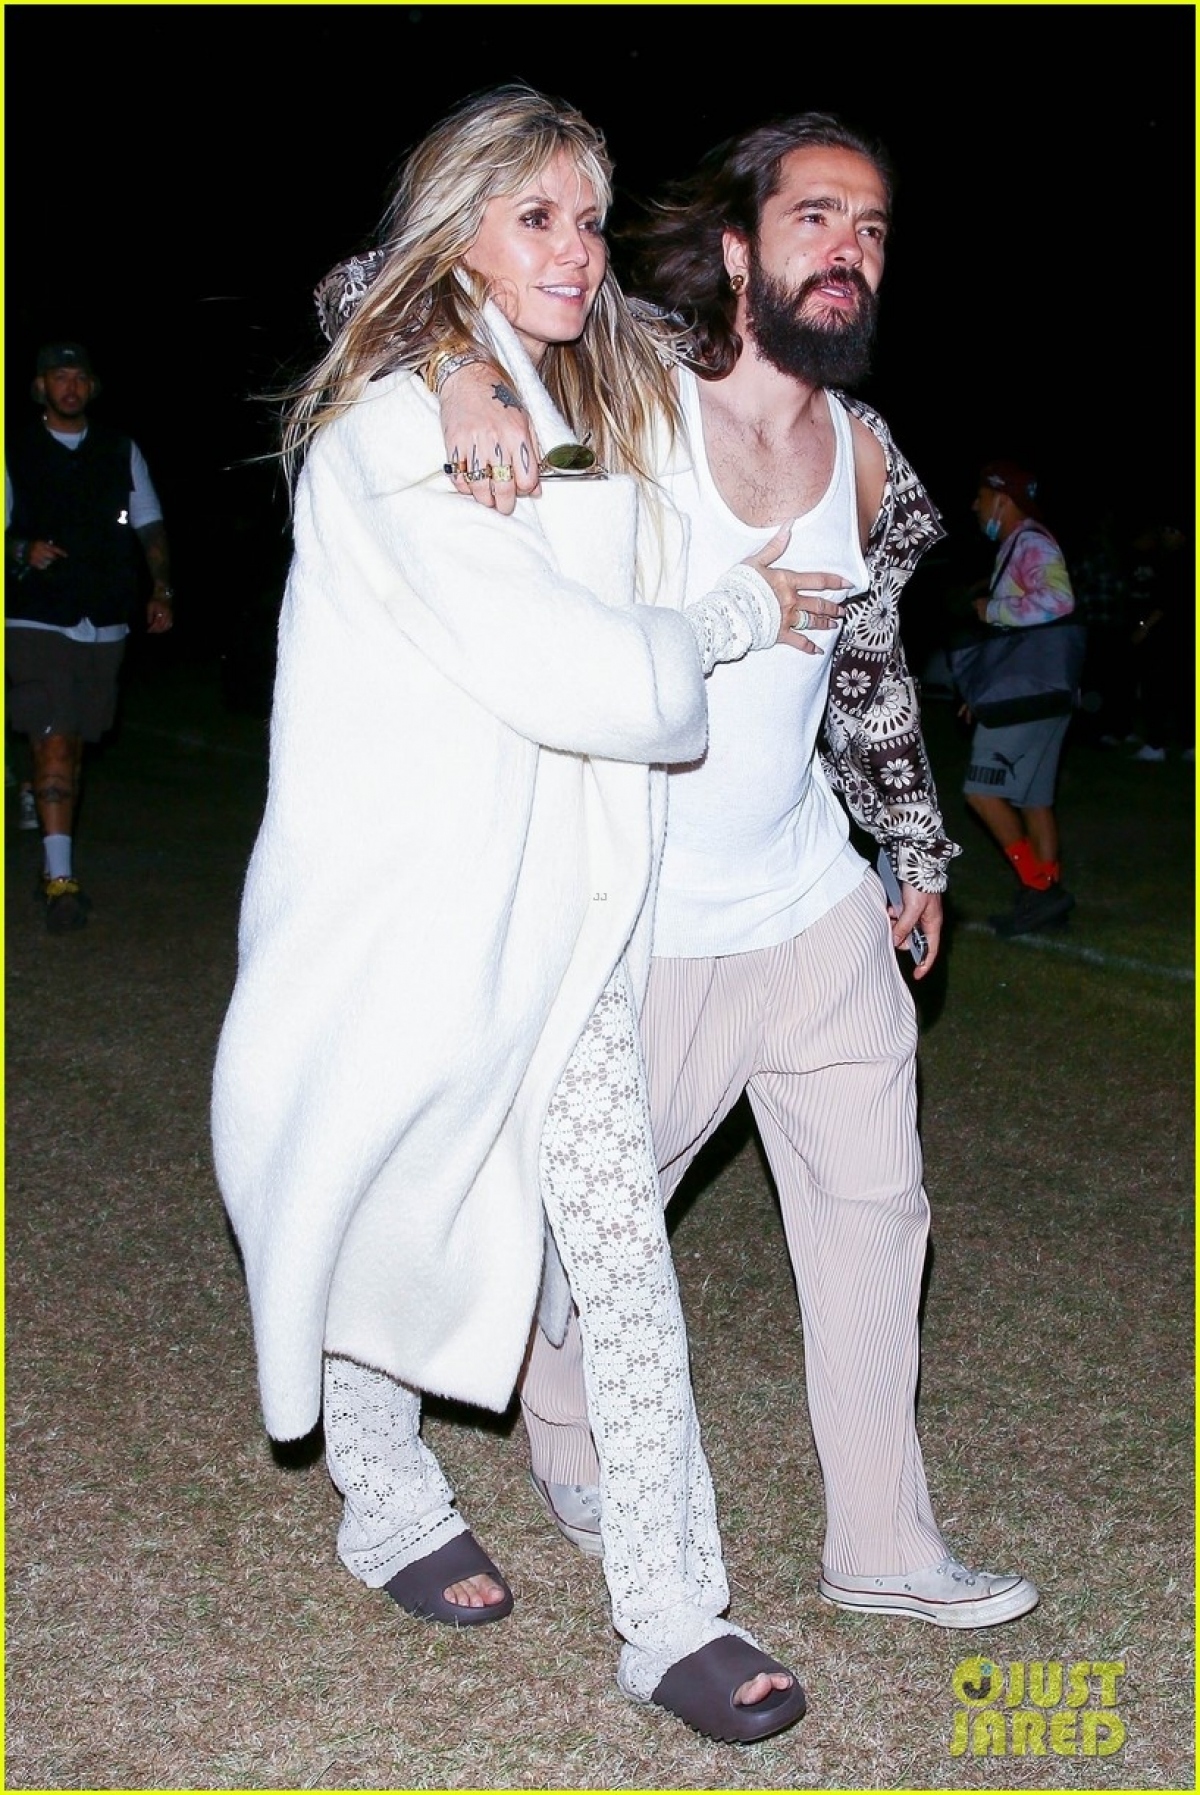 Siêu mẫu Heidi Klum diện đồ sành điệu, tình cảm nắm tay chồng trẻ đi mua sắm - Ảnh 6.